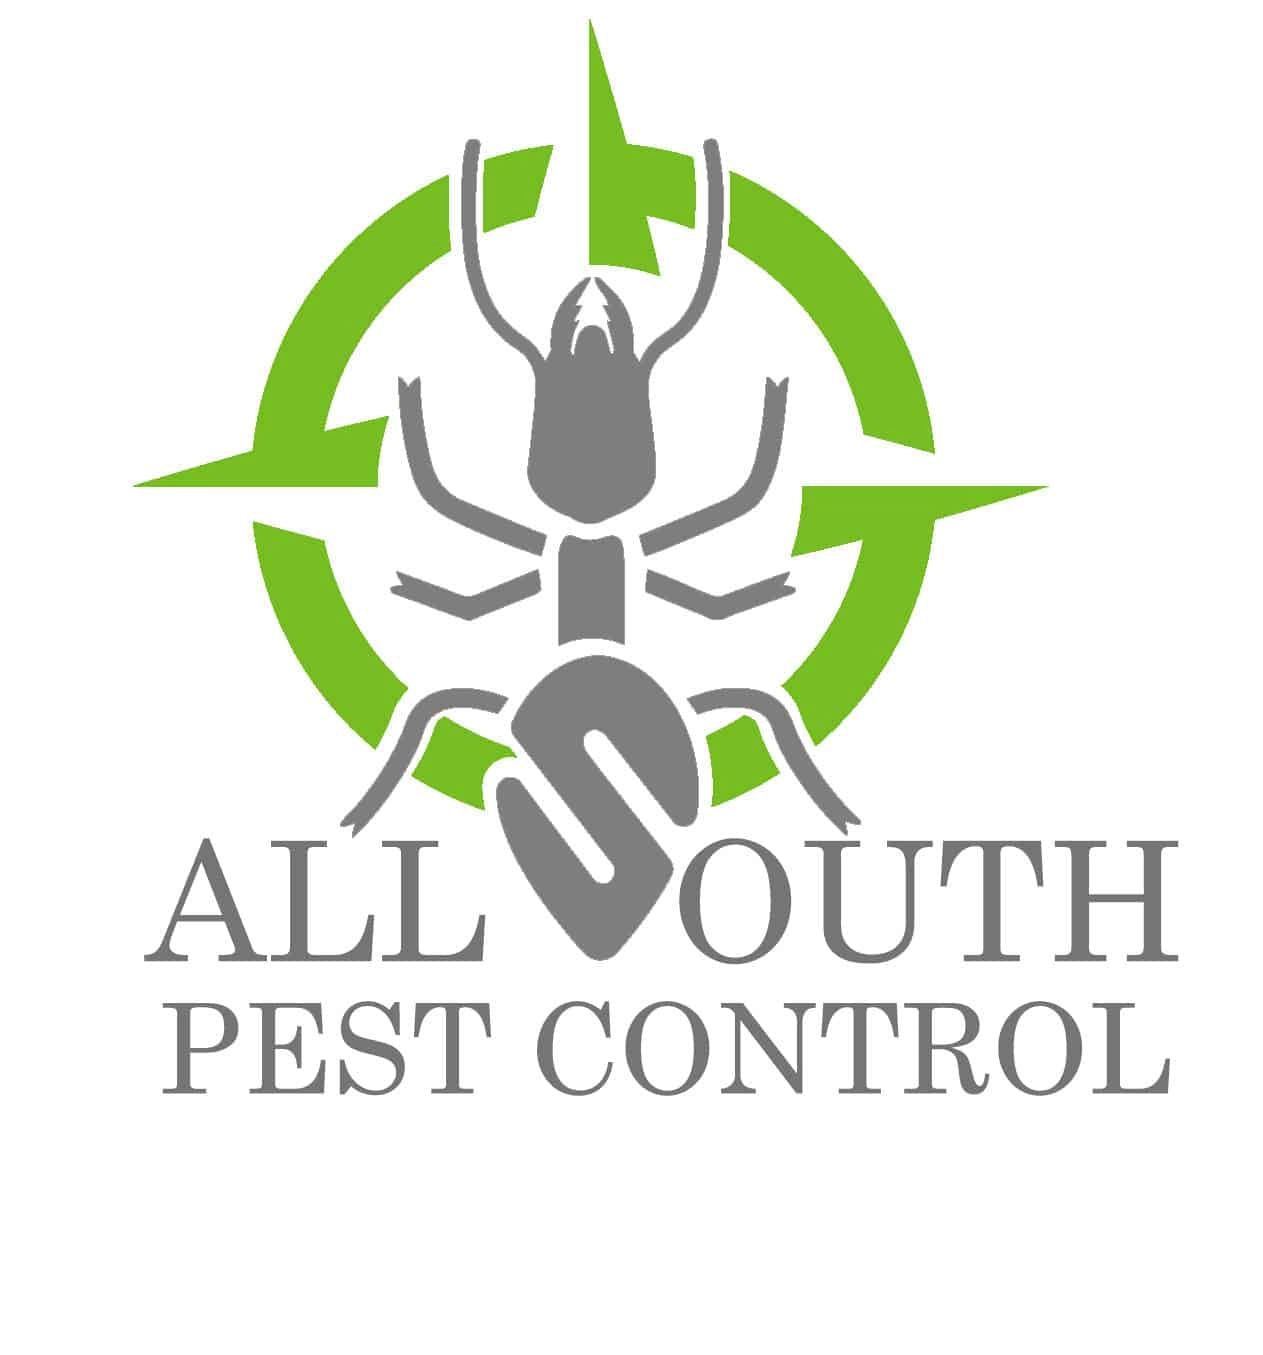 All South Pest Control Logo